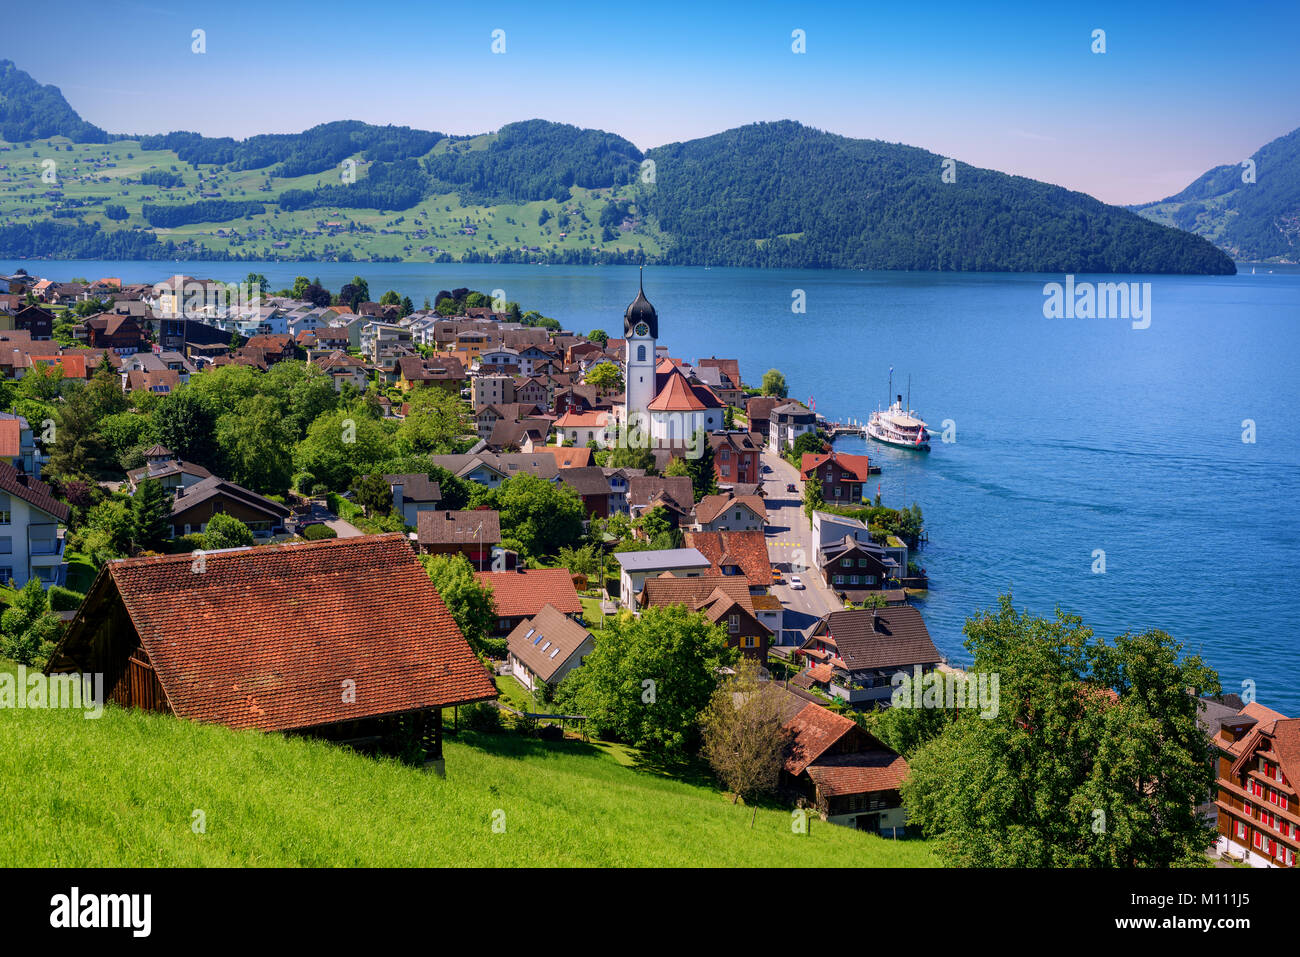 Paysage pittoresque avec le lac des Quatre-Cantons et les montagnes des Alpes, Suisse Banque D'Images